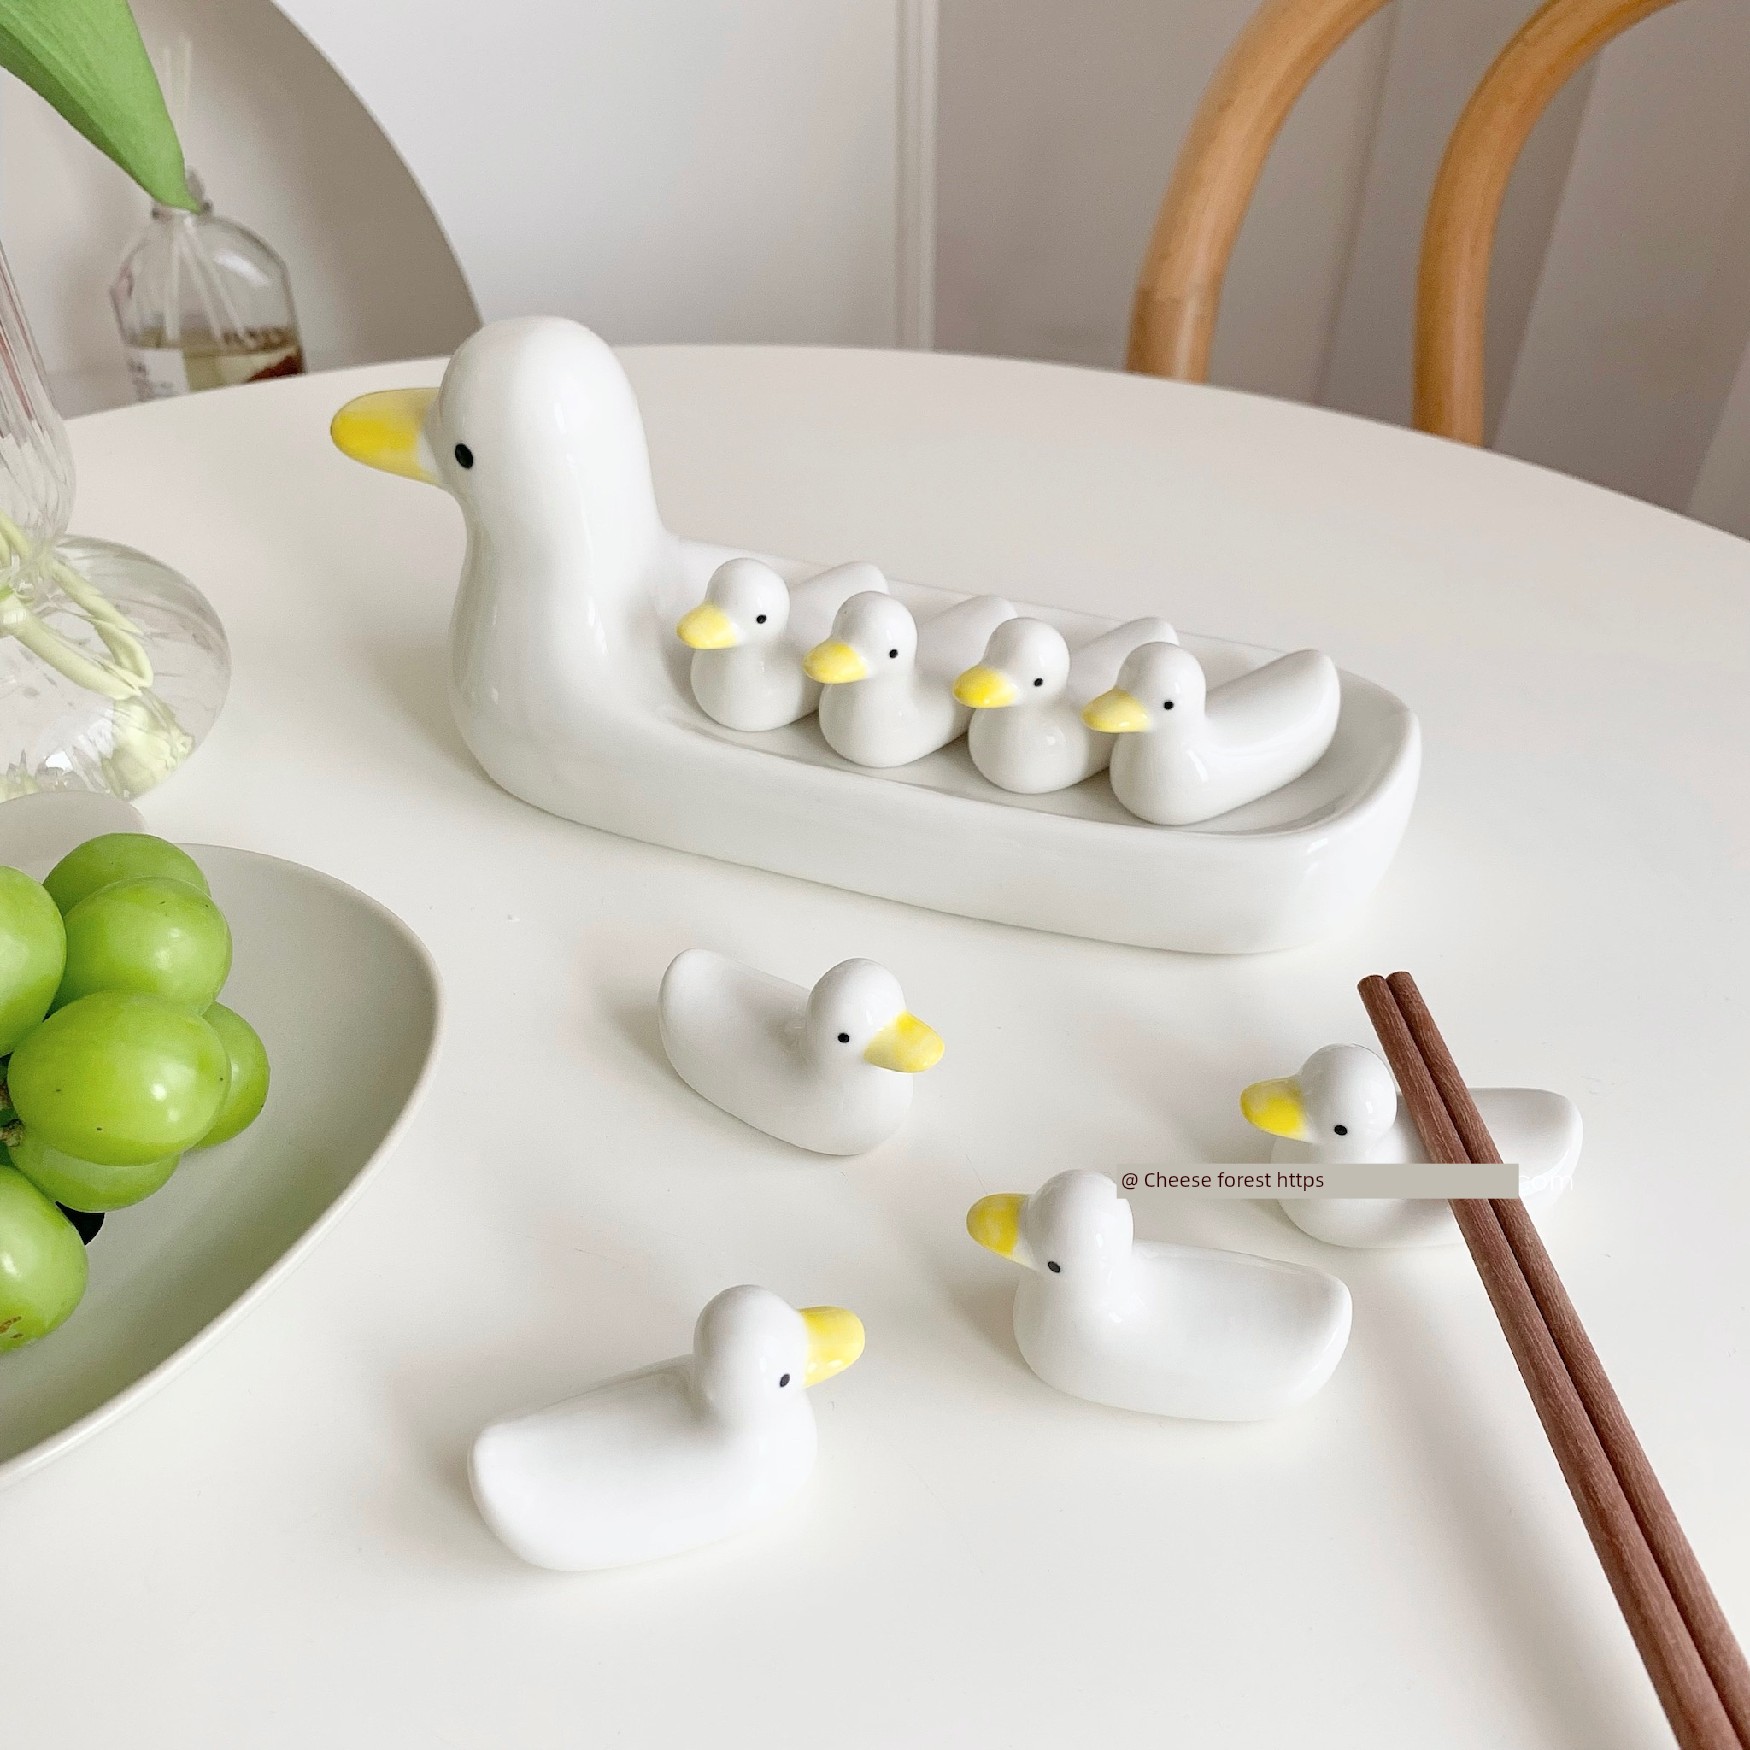 可愛陶瓷鴨子筷子架 ins風創意居家筷枕 桌面拍照道具